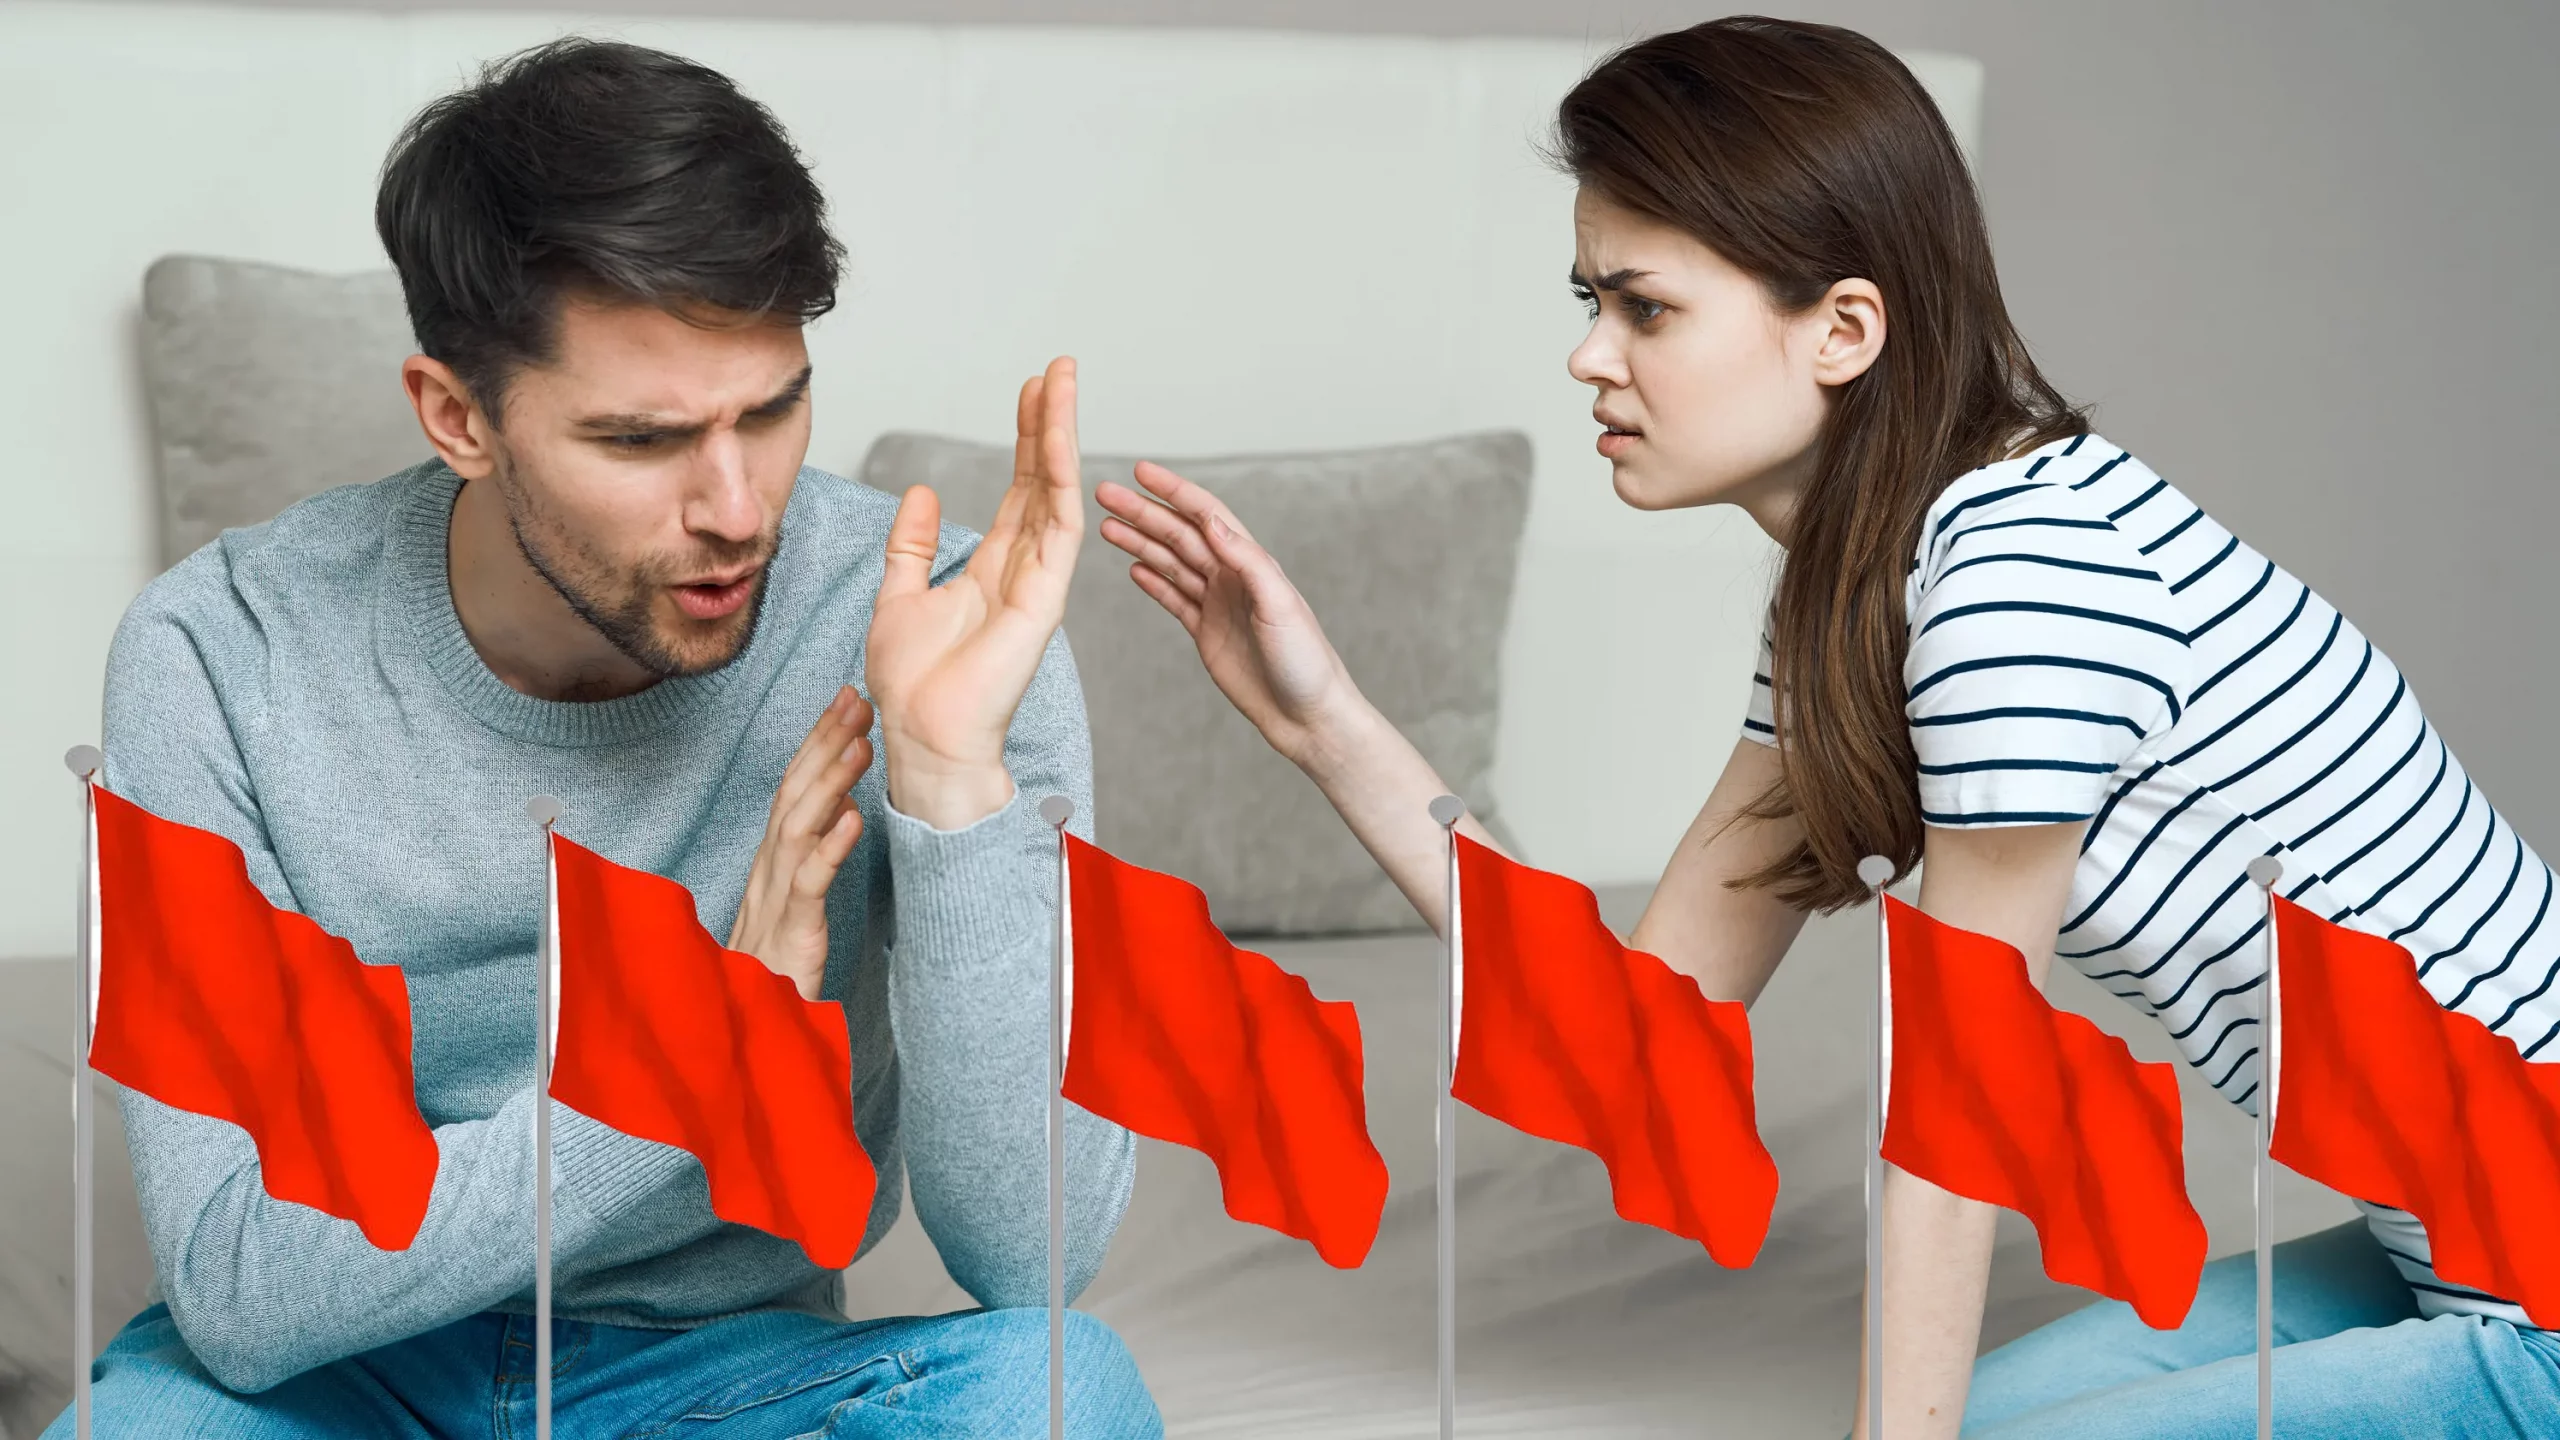 Red flag in relationship là gì? Dấu hiệu nhận biết